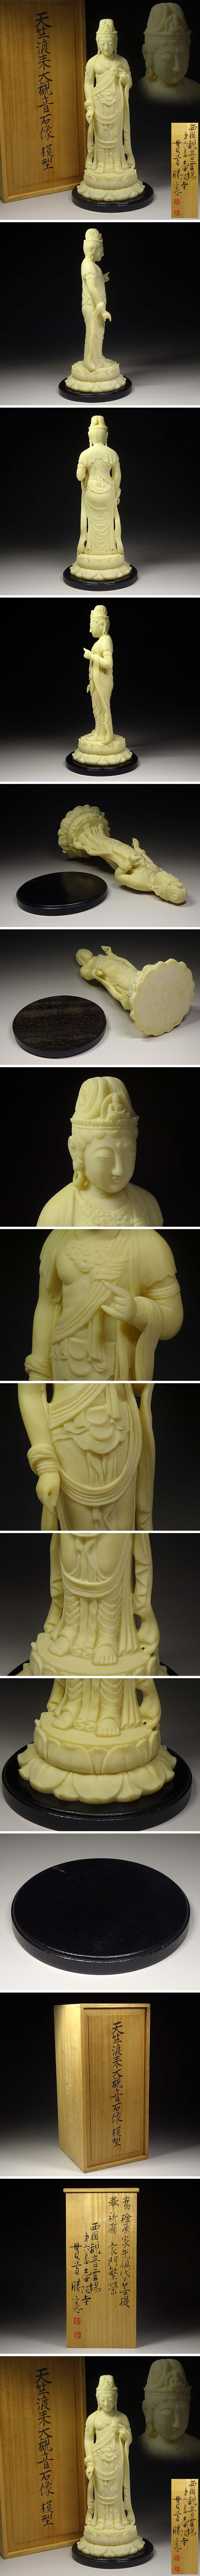 緑屋xt□ 仏教美術 天竺渡来大観音石像 模型 木箱(西国第六番 南法華寺